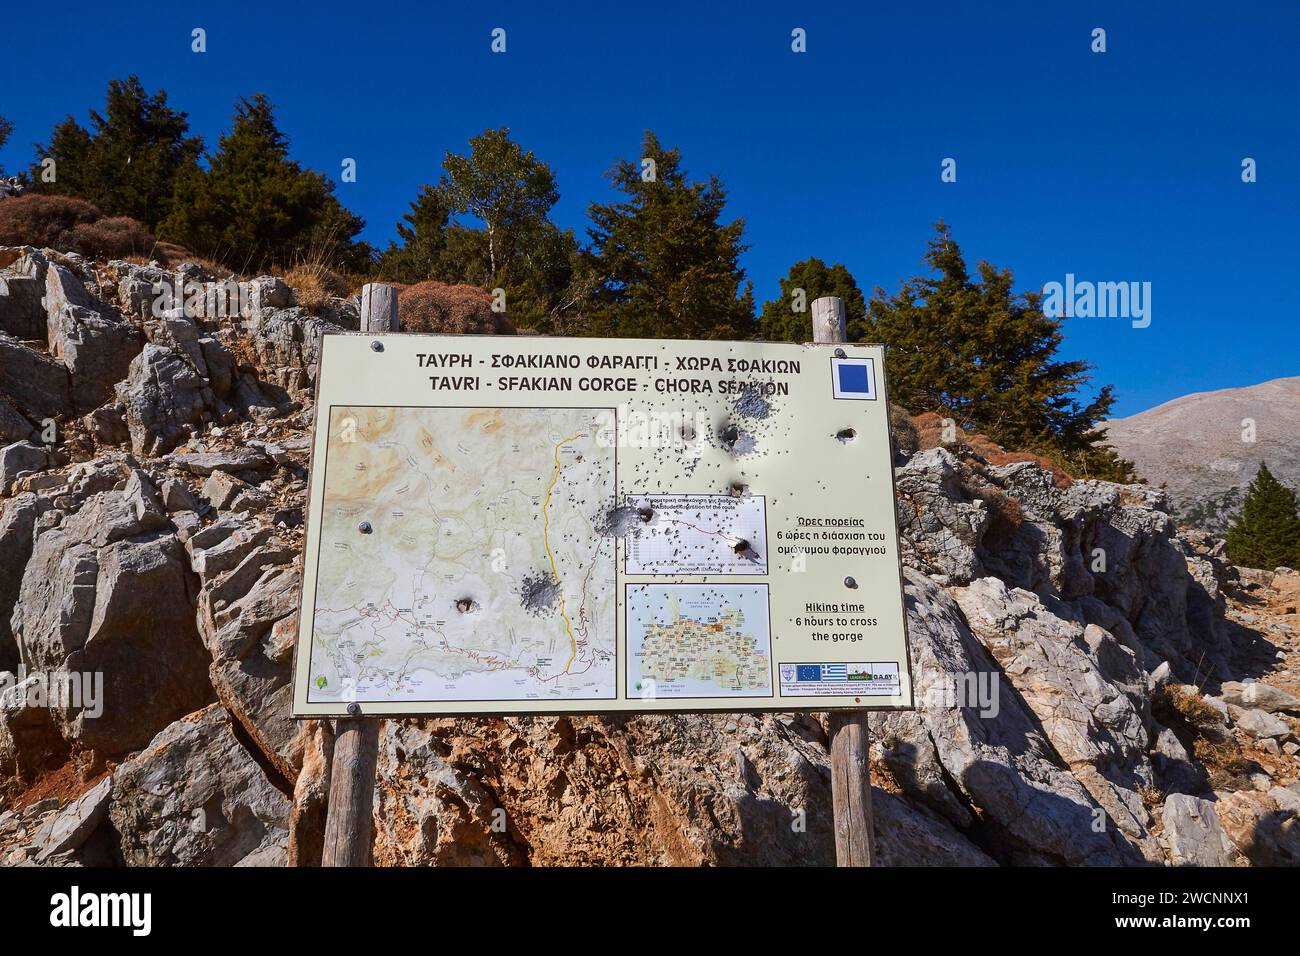 Niatos plateau, carte d'information sur un panneau dans un paysage montagneux par la lumière du jour, près d'Askifou, Sfakia, Crète occidentale, Crète, Grèce Banque D'Images